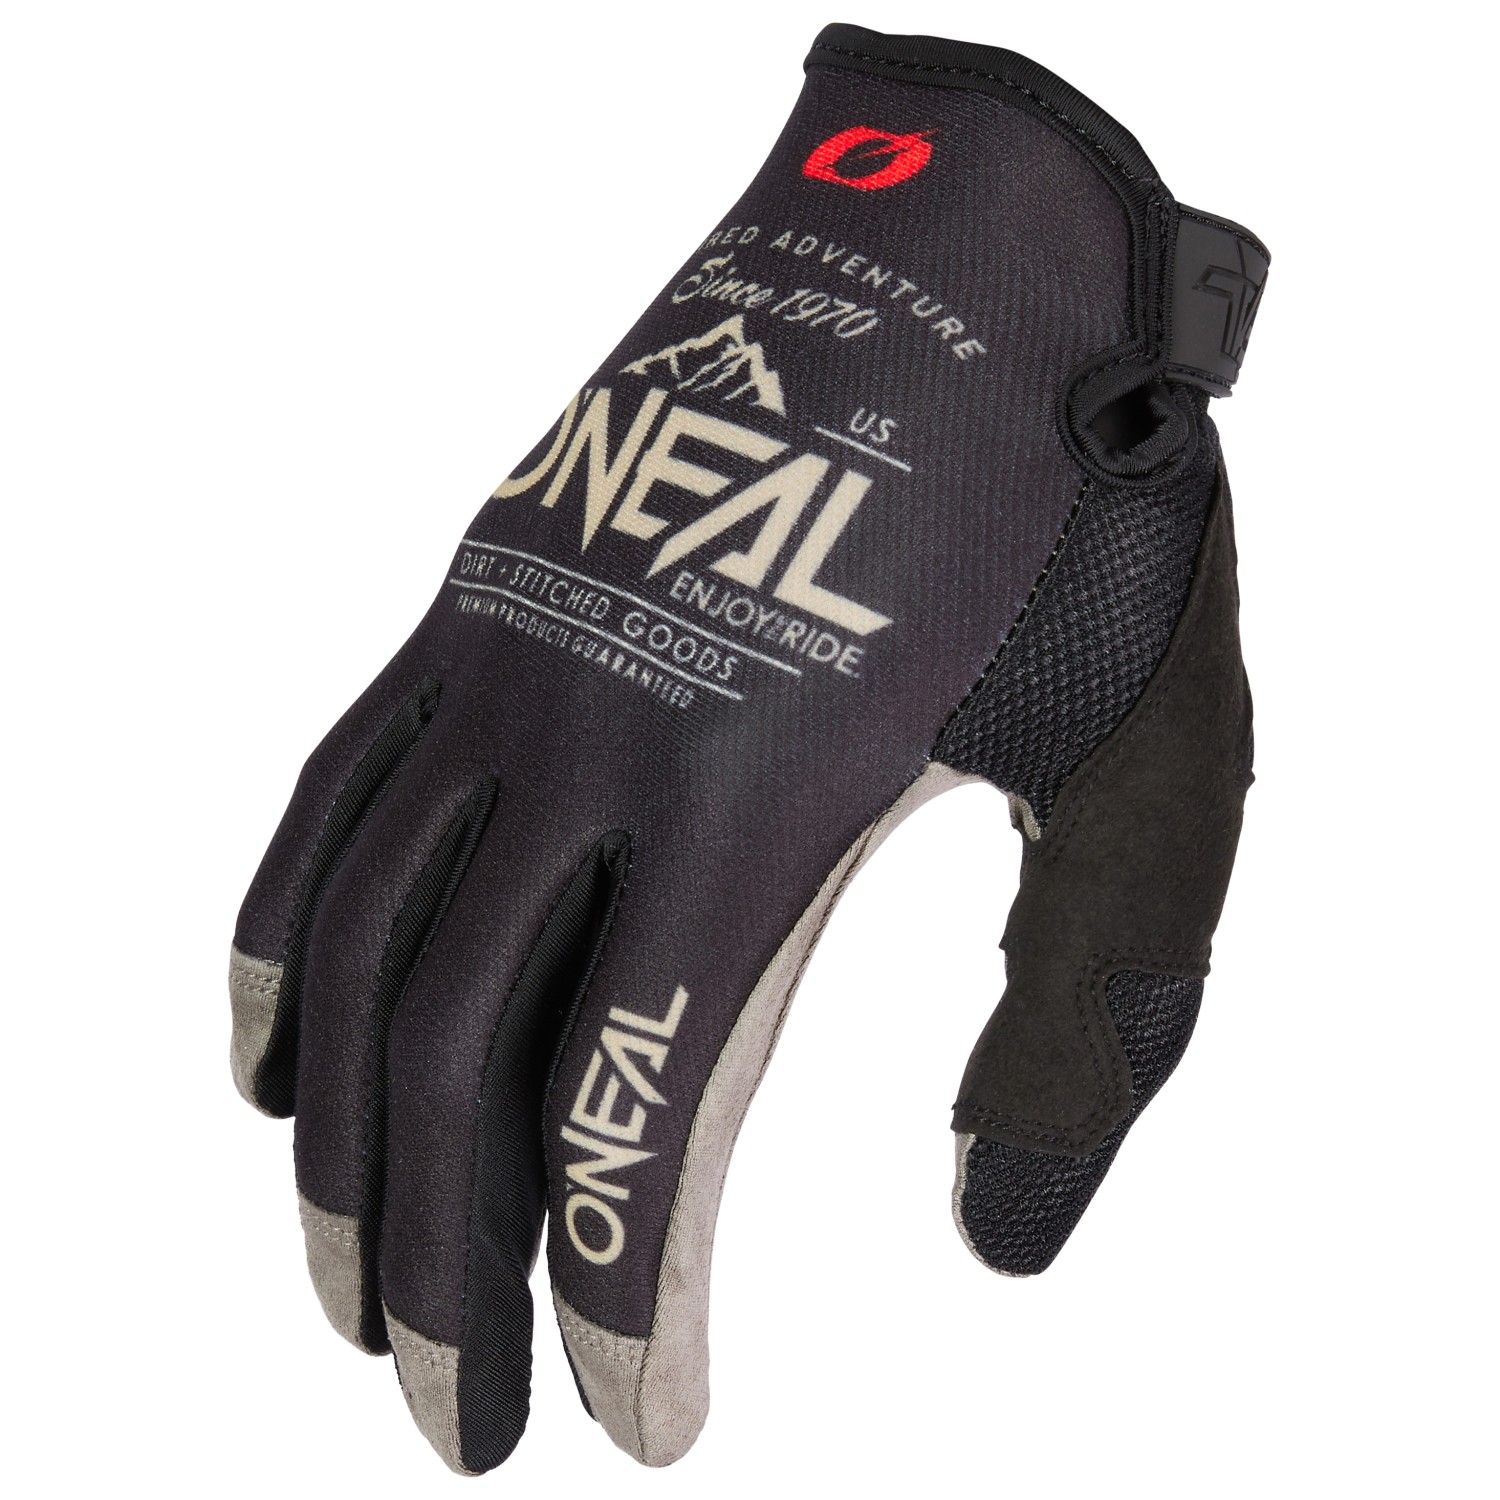 Перчатки O'Neal MAYHEM Glove DIRT V 23, цвет Black/Sand mayhem – atavistic black disorder kommando